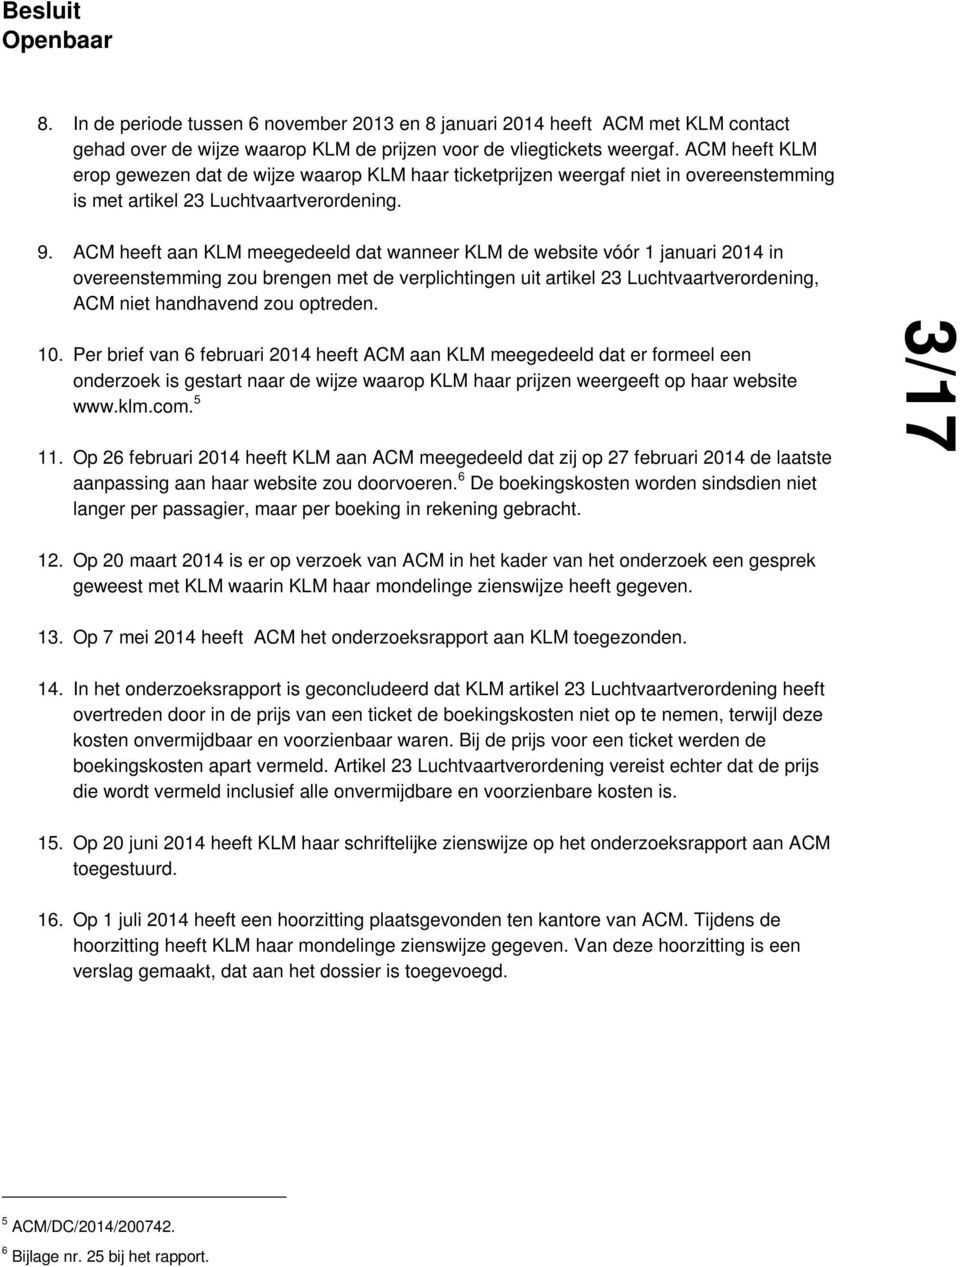 ACM heeft aan KLM meegedeeld dat wanneer KLM de website vóór 1 januari 2014 in overeenstemming zou brengen met de verplichtingen uit artikel 23 Luchtvaartverordening, ACM niet handhavend zou optreden.